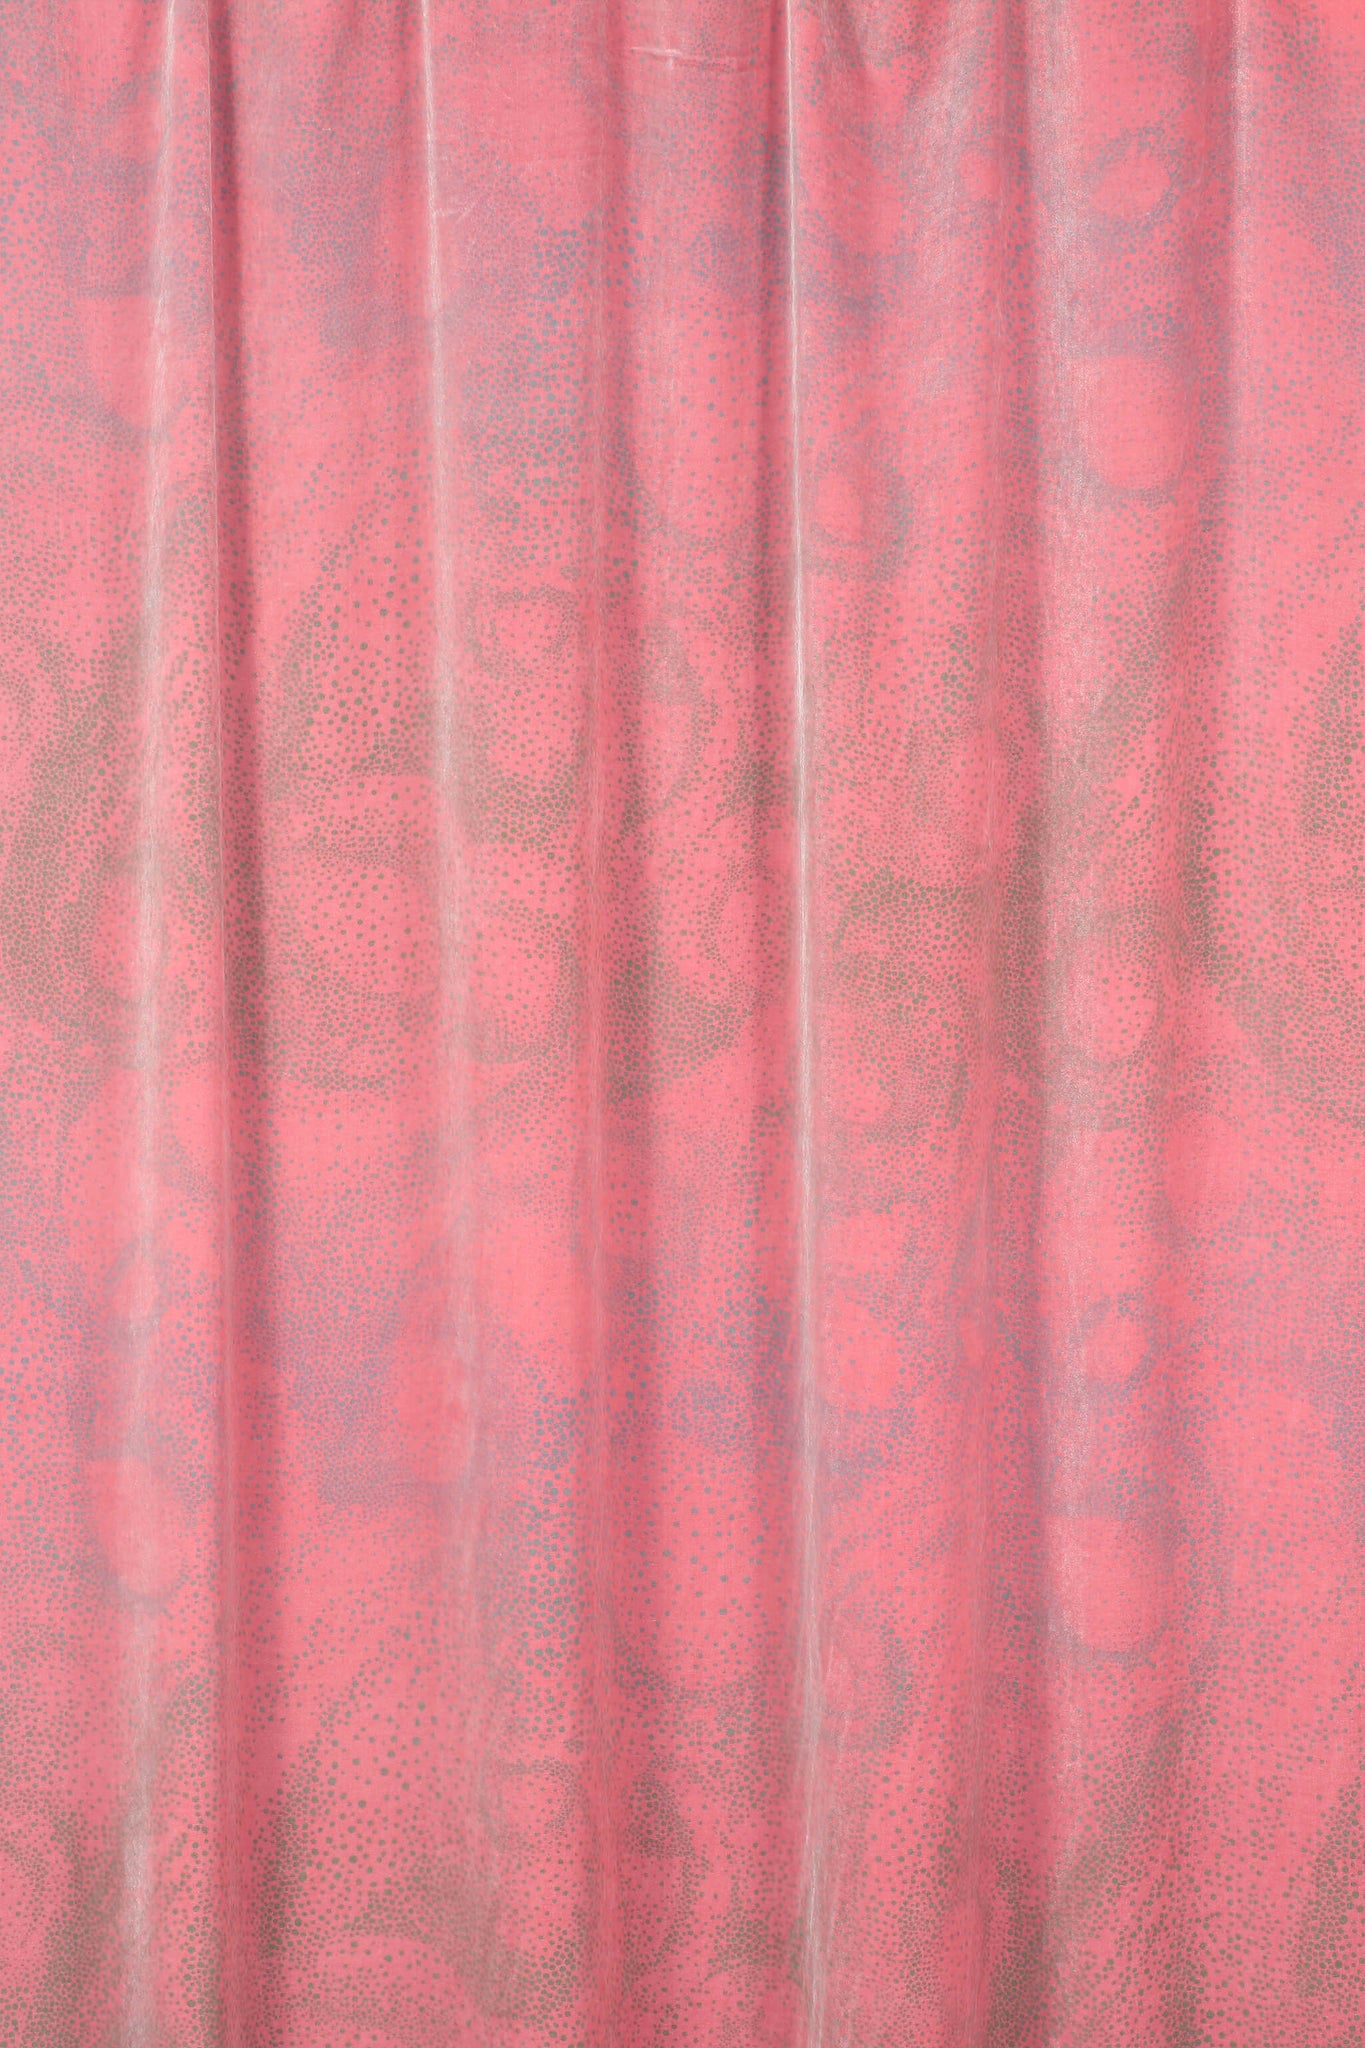 Aurora scarlet fabric design silk velvet hanging by GvE&Co (Georgina von Etzdorf)